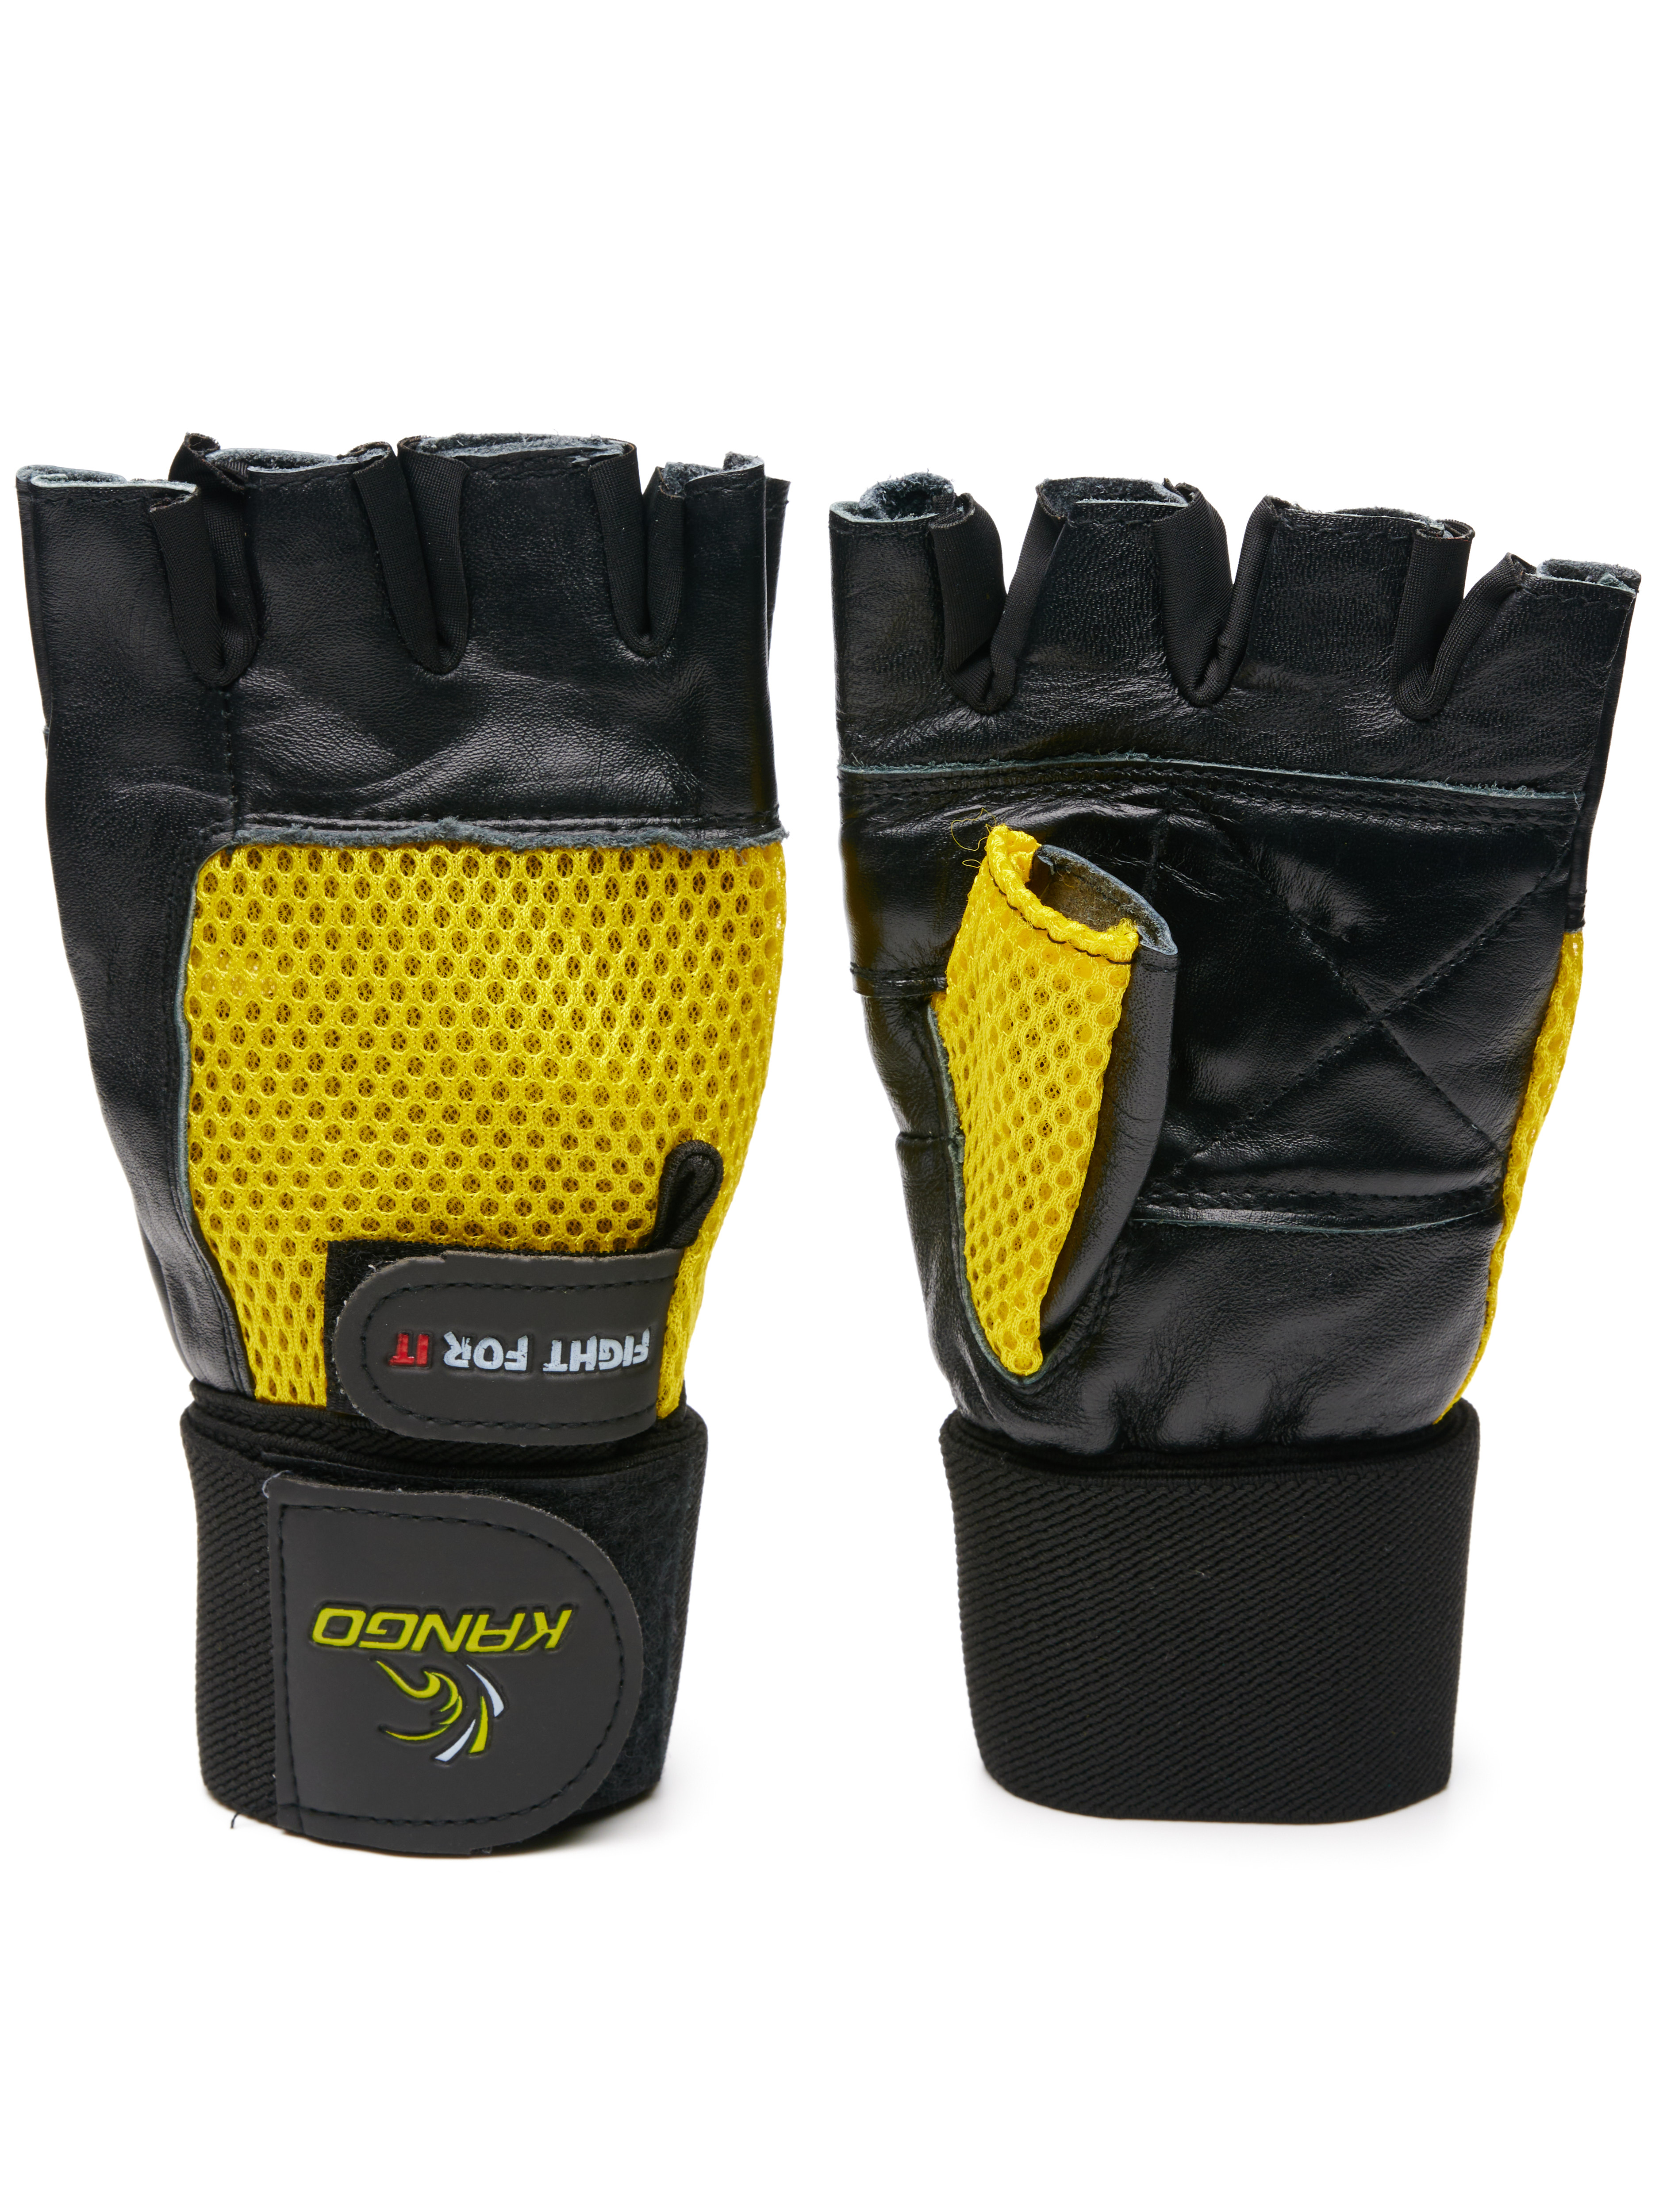 Перчатки для фитнеса Kango WGL-069 Black/Yellow